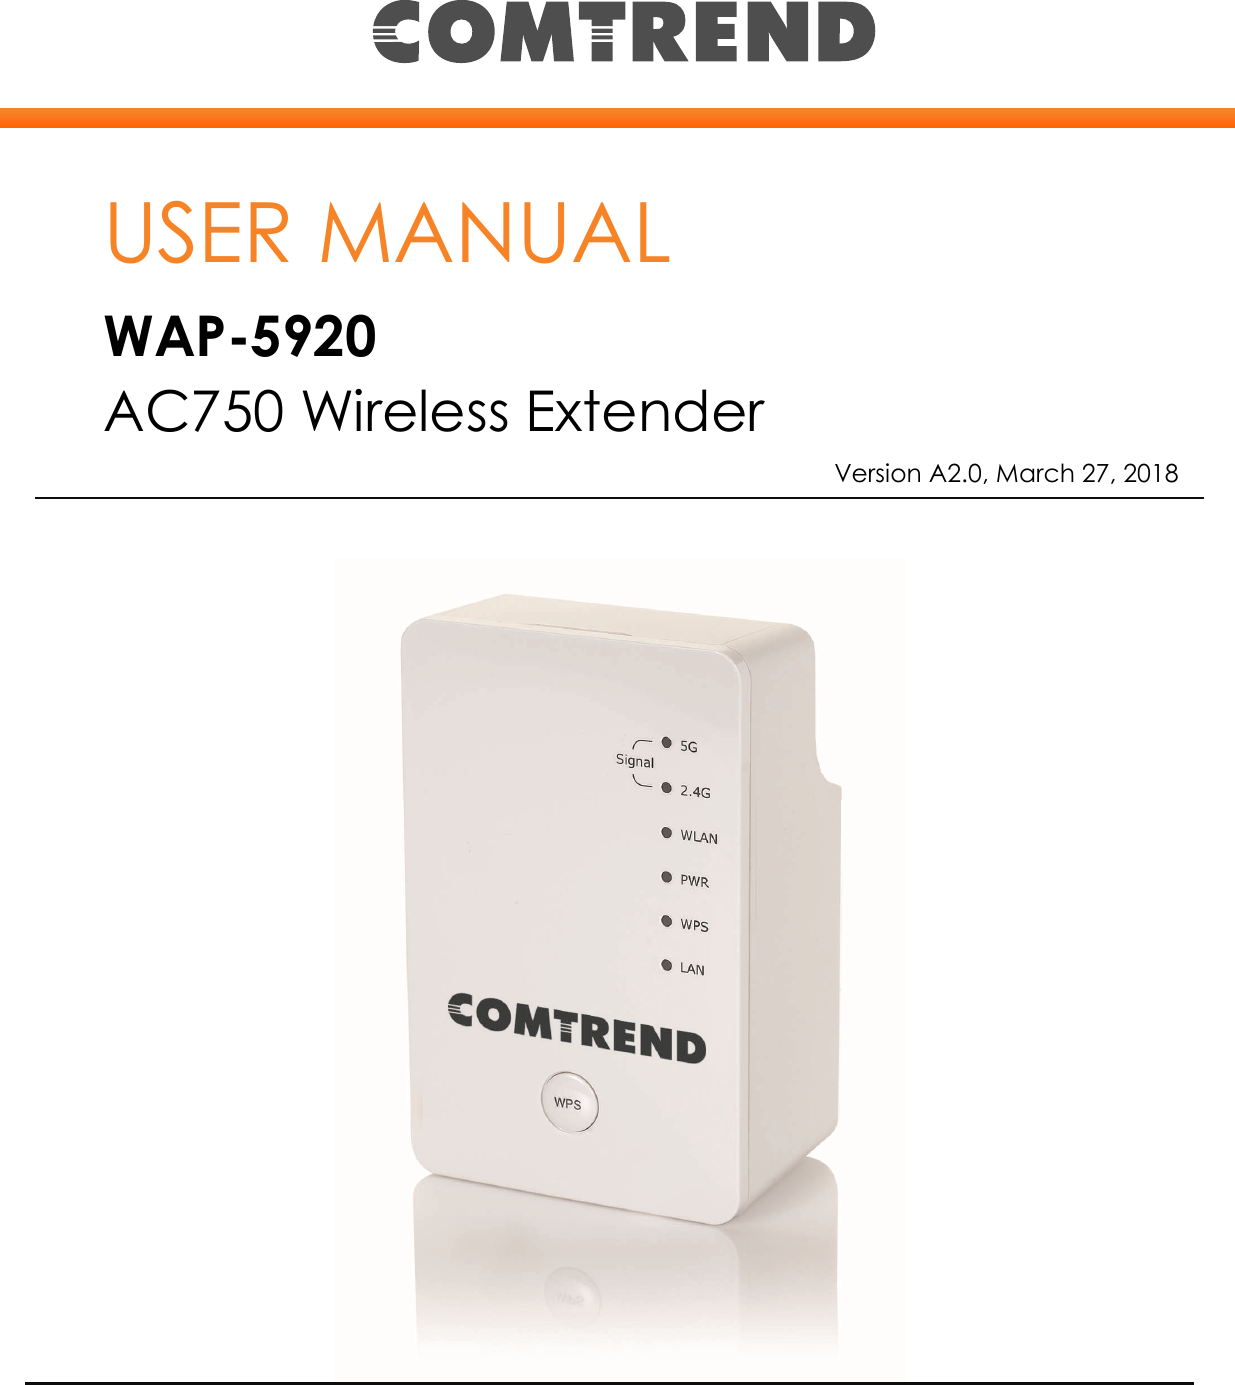    USER MANUAL WAP-5920 AC750 Wireless Extender        Version A2.0, March 27, 2018 